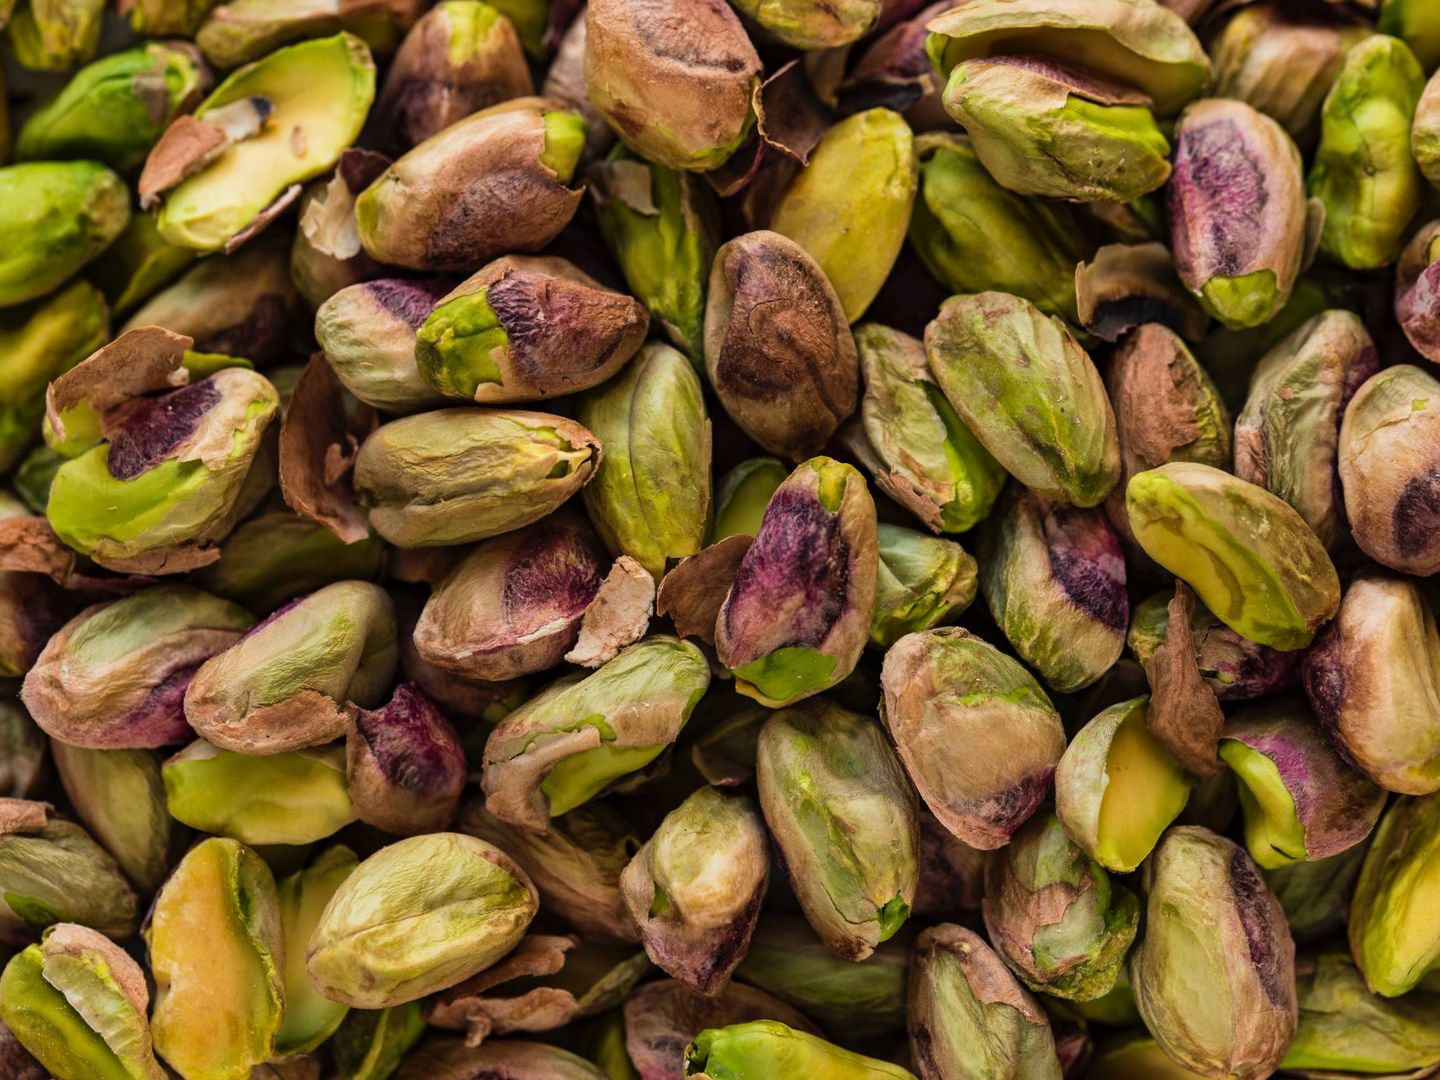 Entre horas puedes comer unos 30 gramos de pistachos y beneficiarte de todos sus nutrientes. (Unsplash)